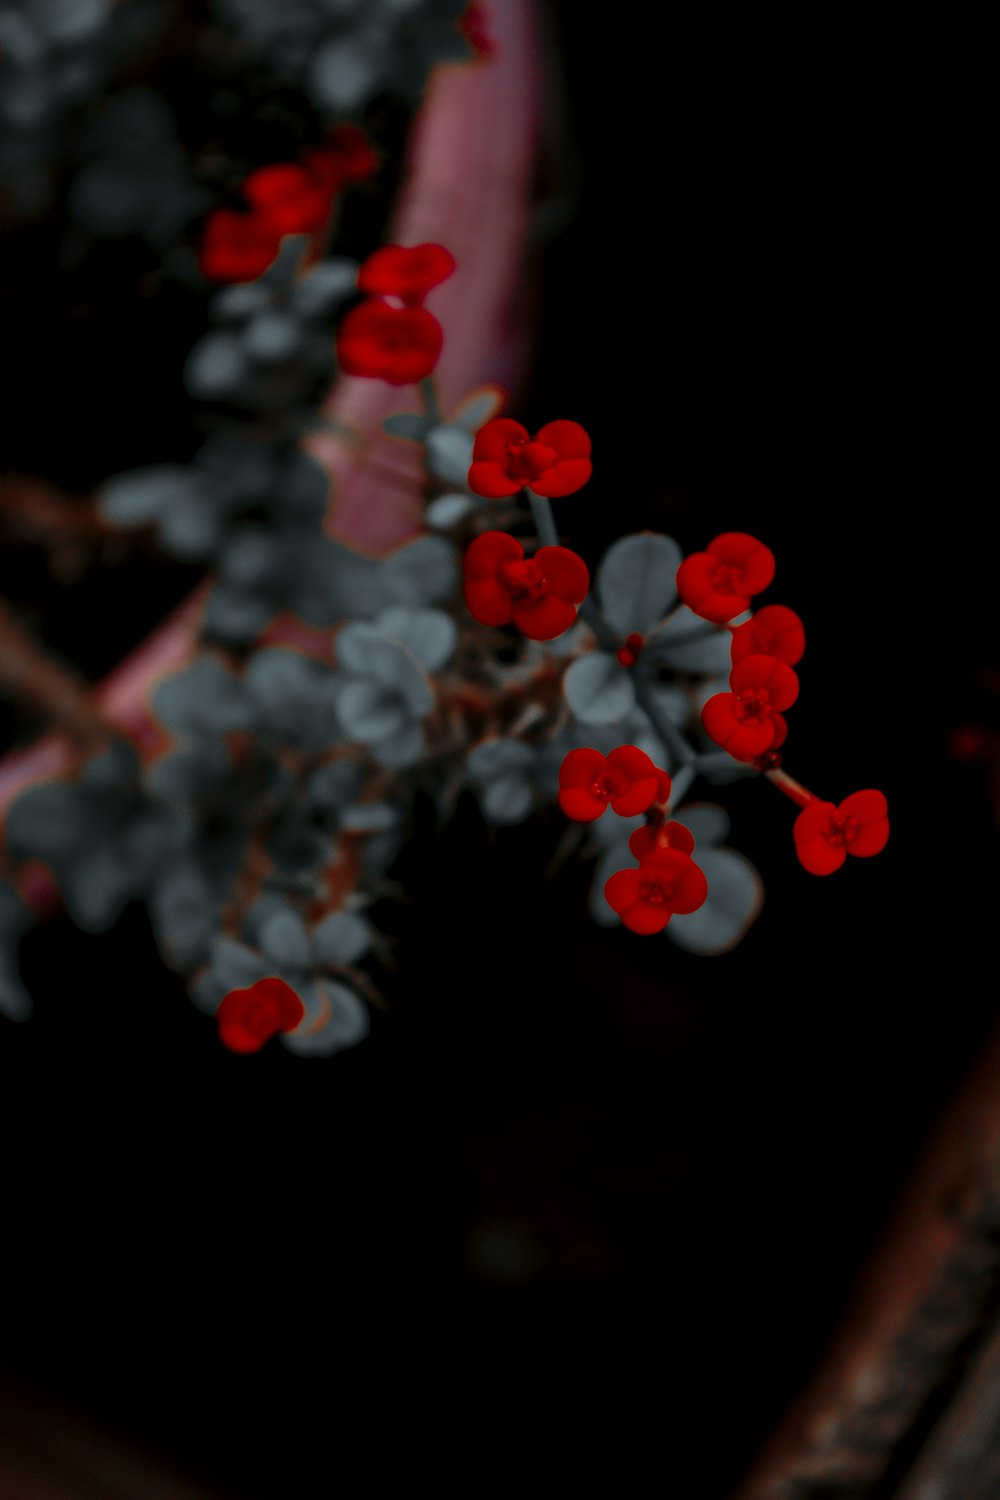 fiore rosso e bianco nella fotografia ravvicinata